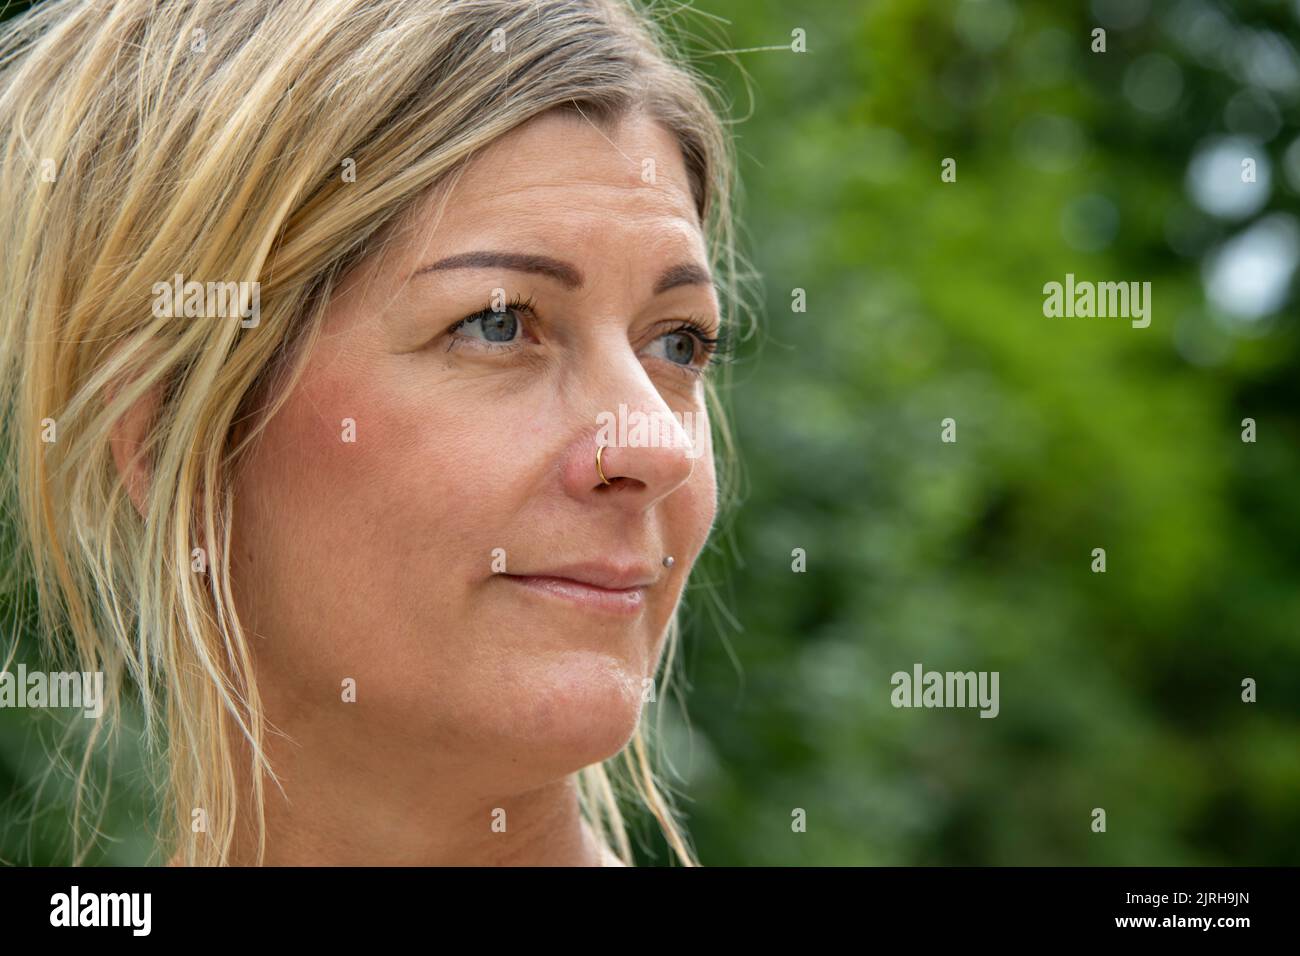 Kopfaufnahme einer blonden europäischen Frau mit Gesichtsausdruck Stockfoto